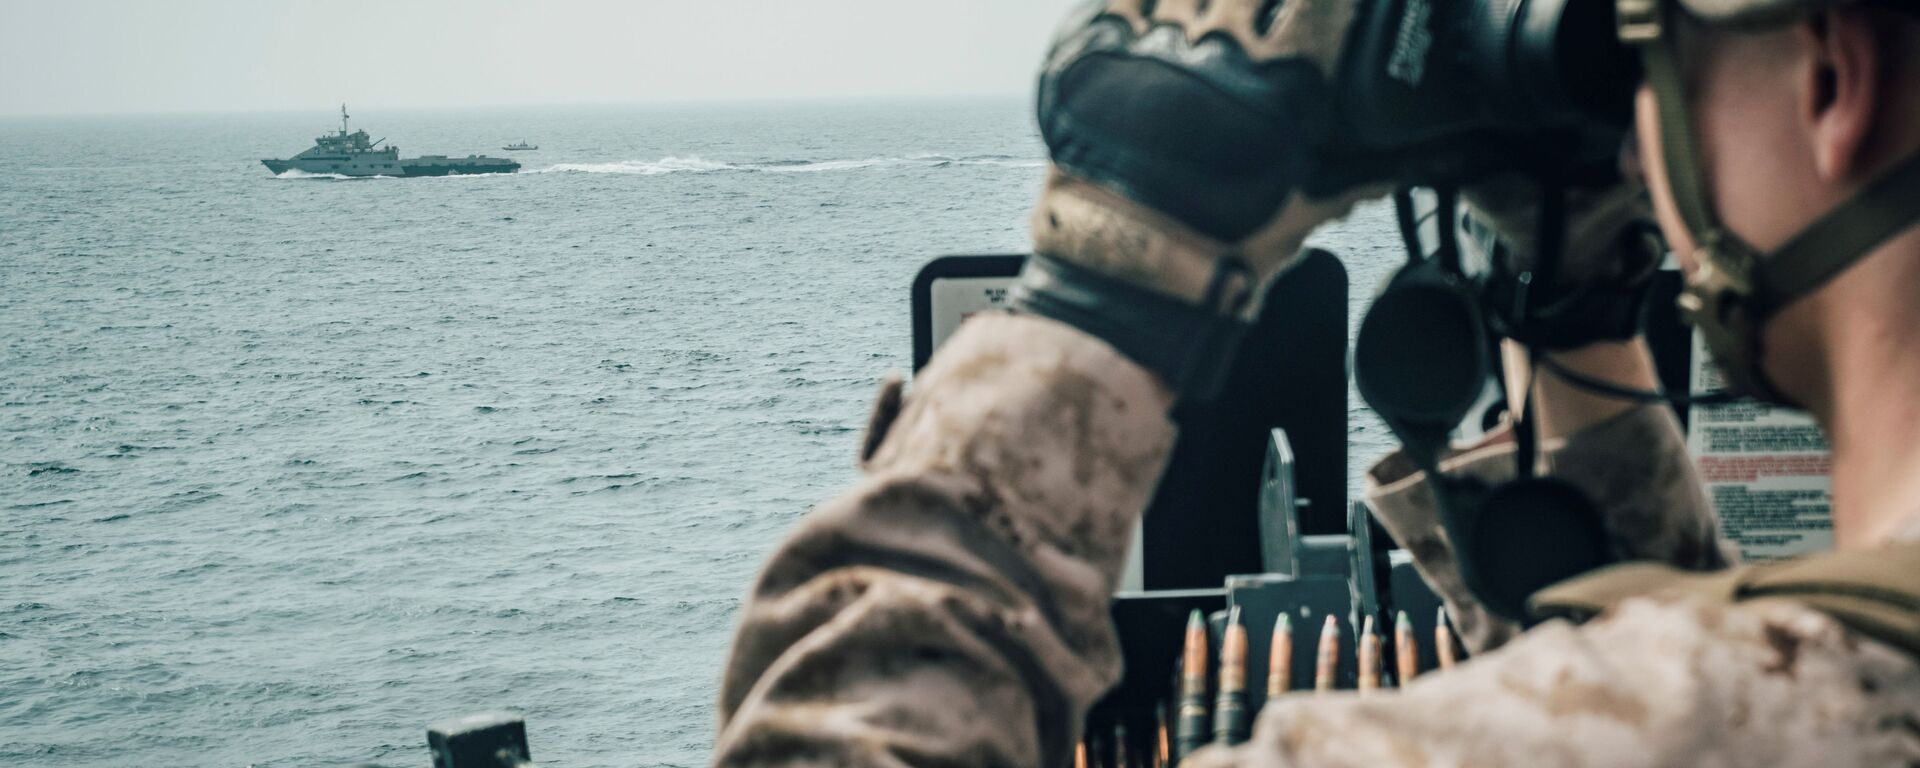 جندي من مشاة البحرية الأمريكية يراقب طائرة إيرانية هجومية من سفينة حربية أمريكية جون مورثا خلال مضيق هرمز في بحر العرب قبالة عُمان، 18 يوليو/ تموز 2019 - سبوتنيك عربي, 1920, 17.12.2021